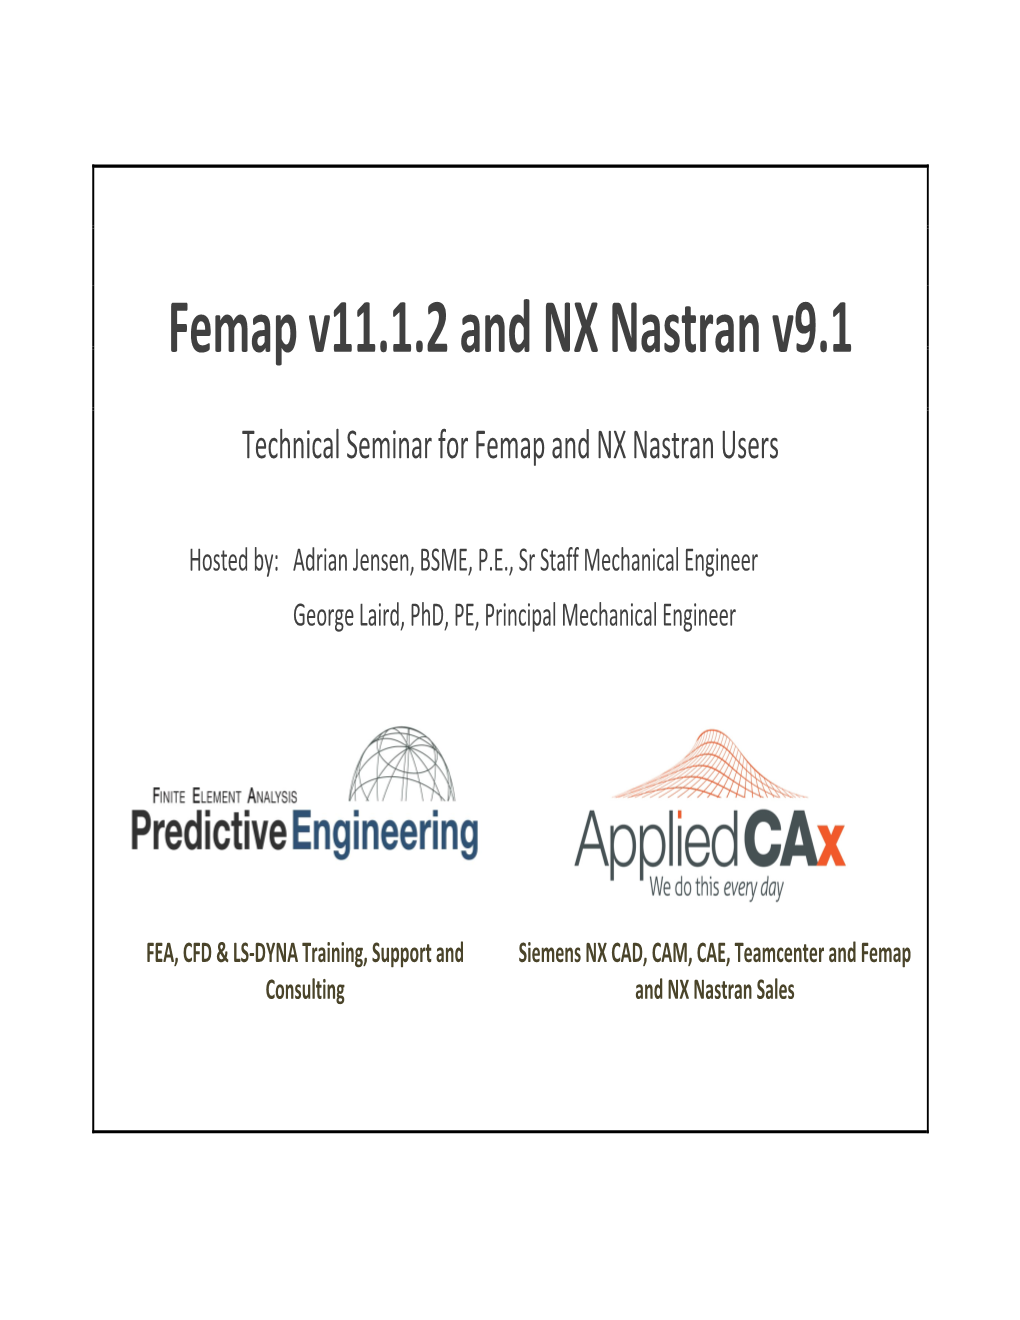 Femap V11.1.2 and NX Nastran V9.1